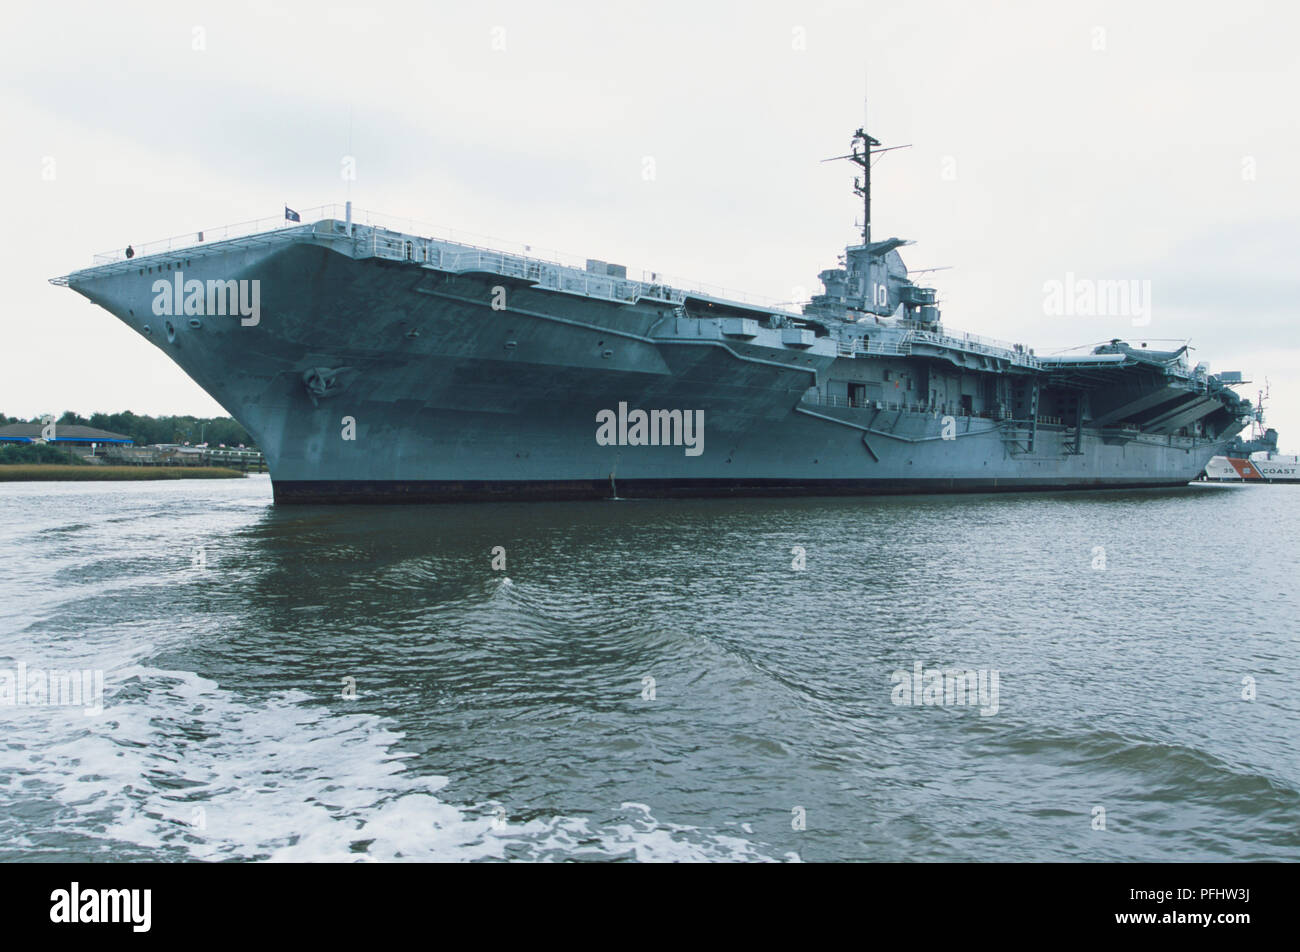 USA, South Carolina, Charleston, der Flugzeugträger "USS Forktown', Seitenansicht Stockfoto